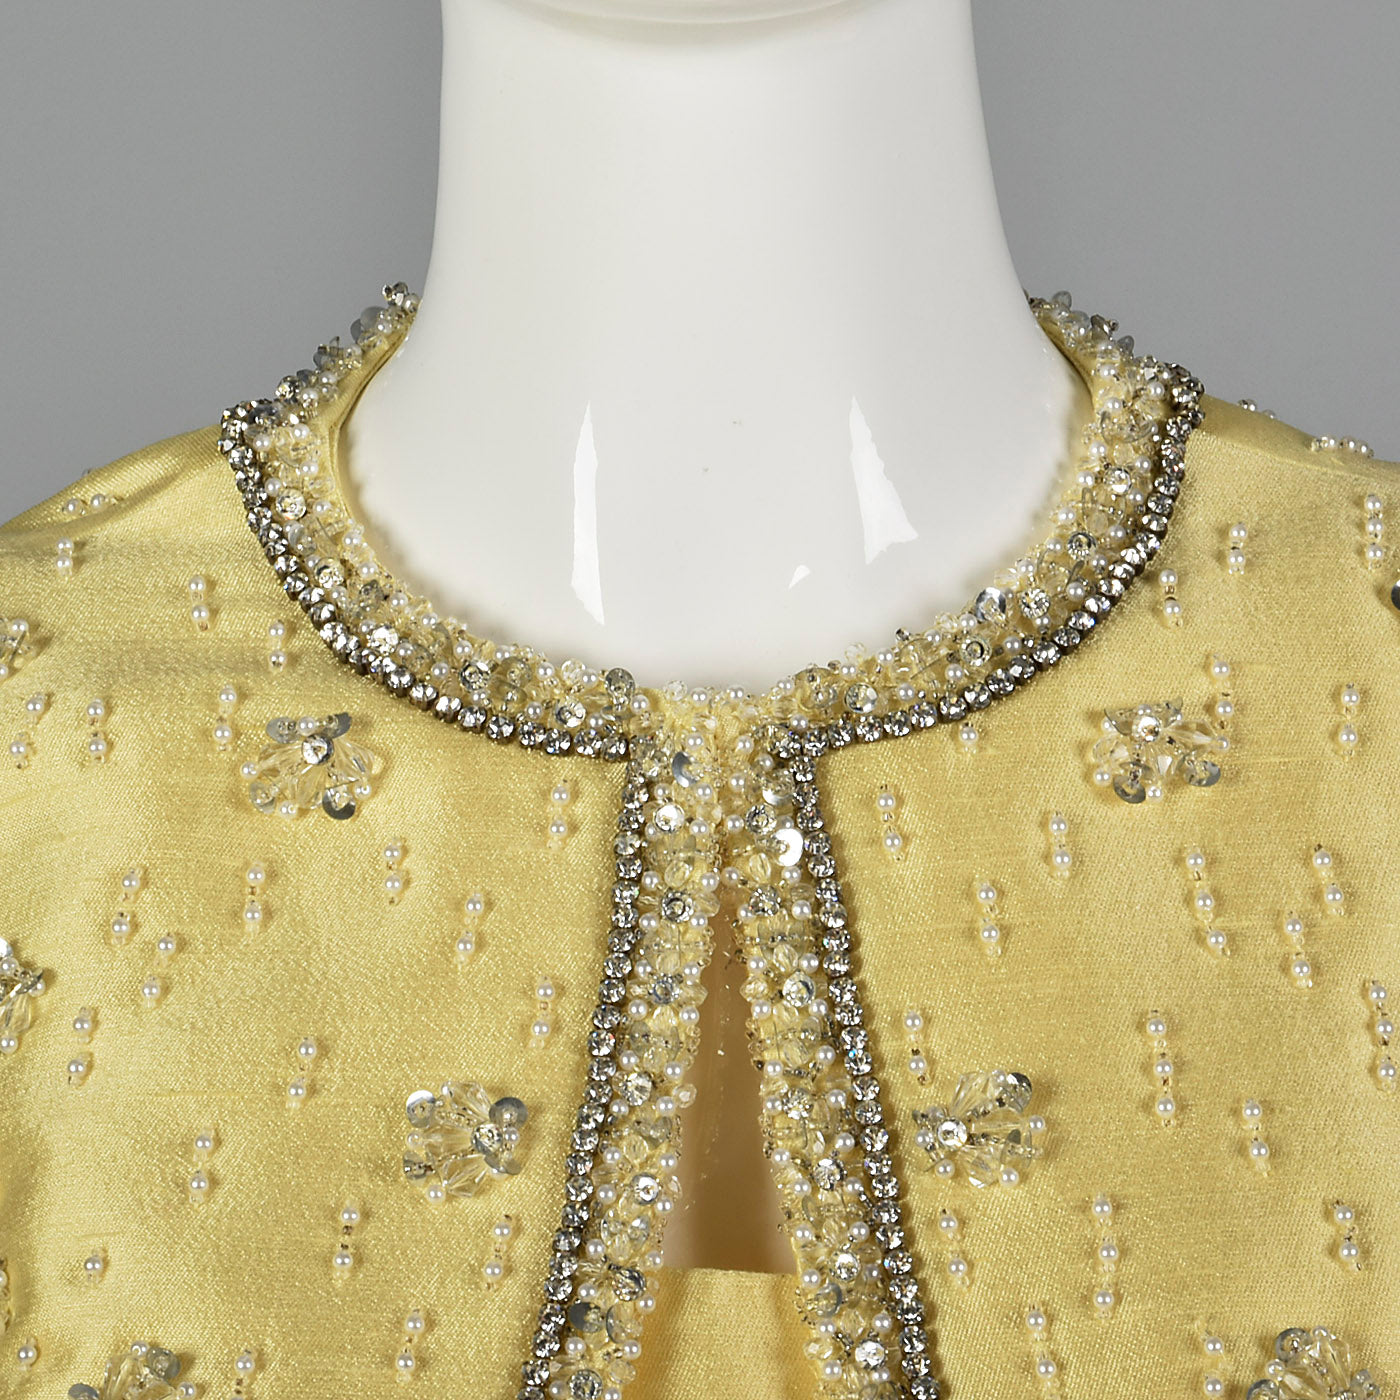 1970s Gino Charles Yellow Dress with Beading Detail